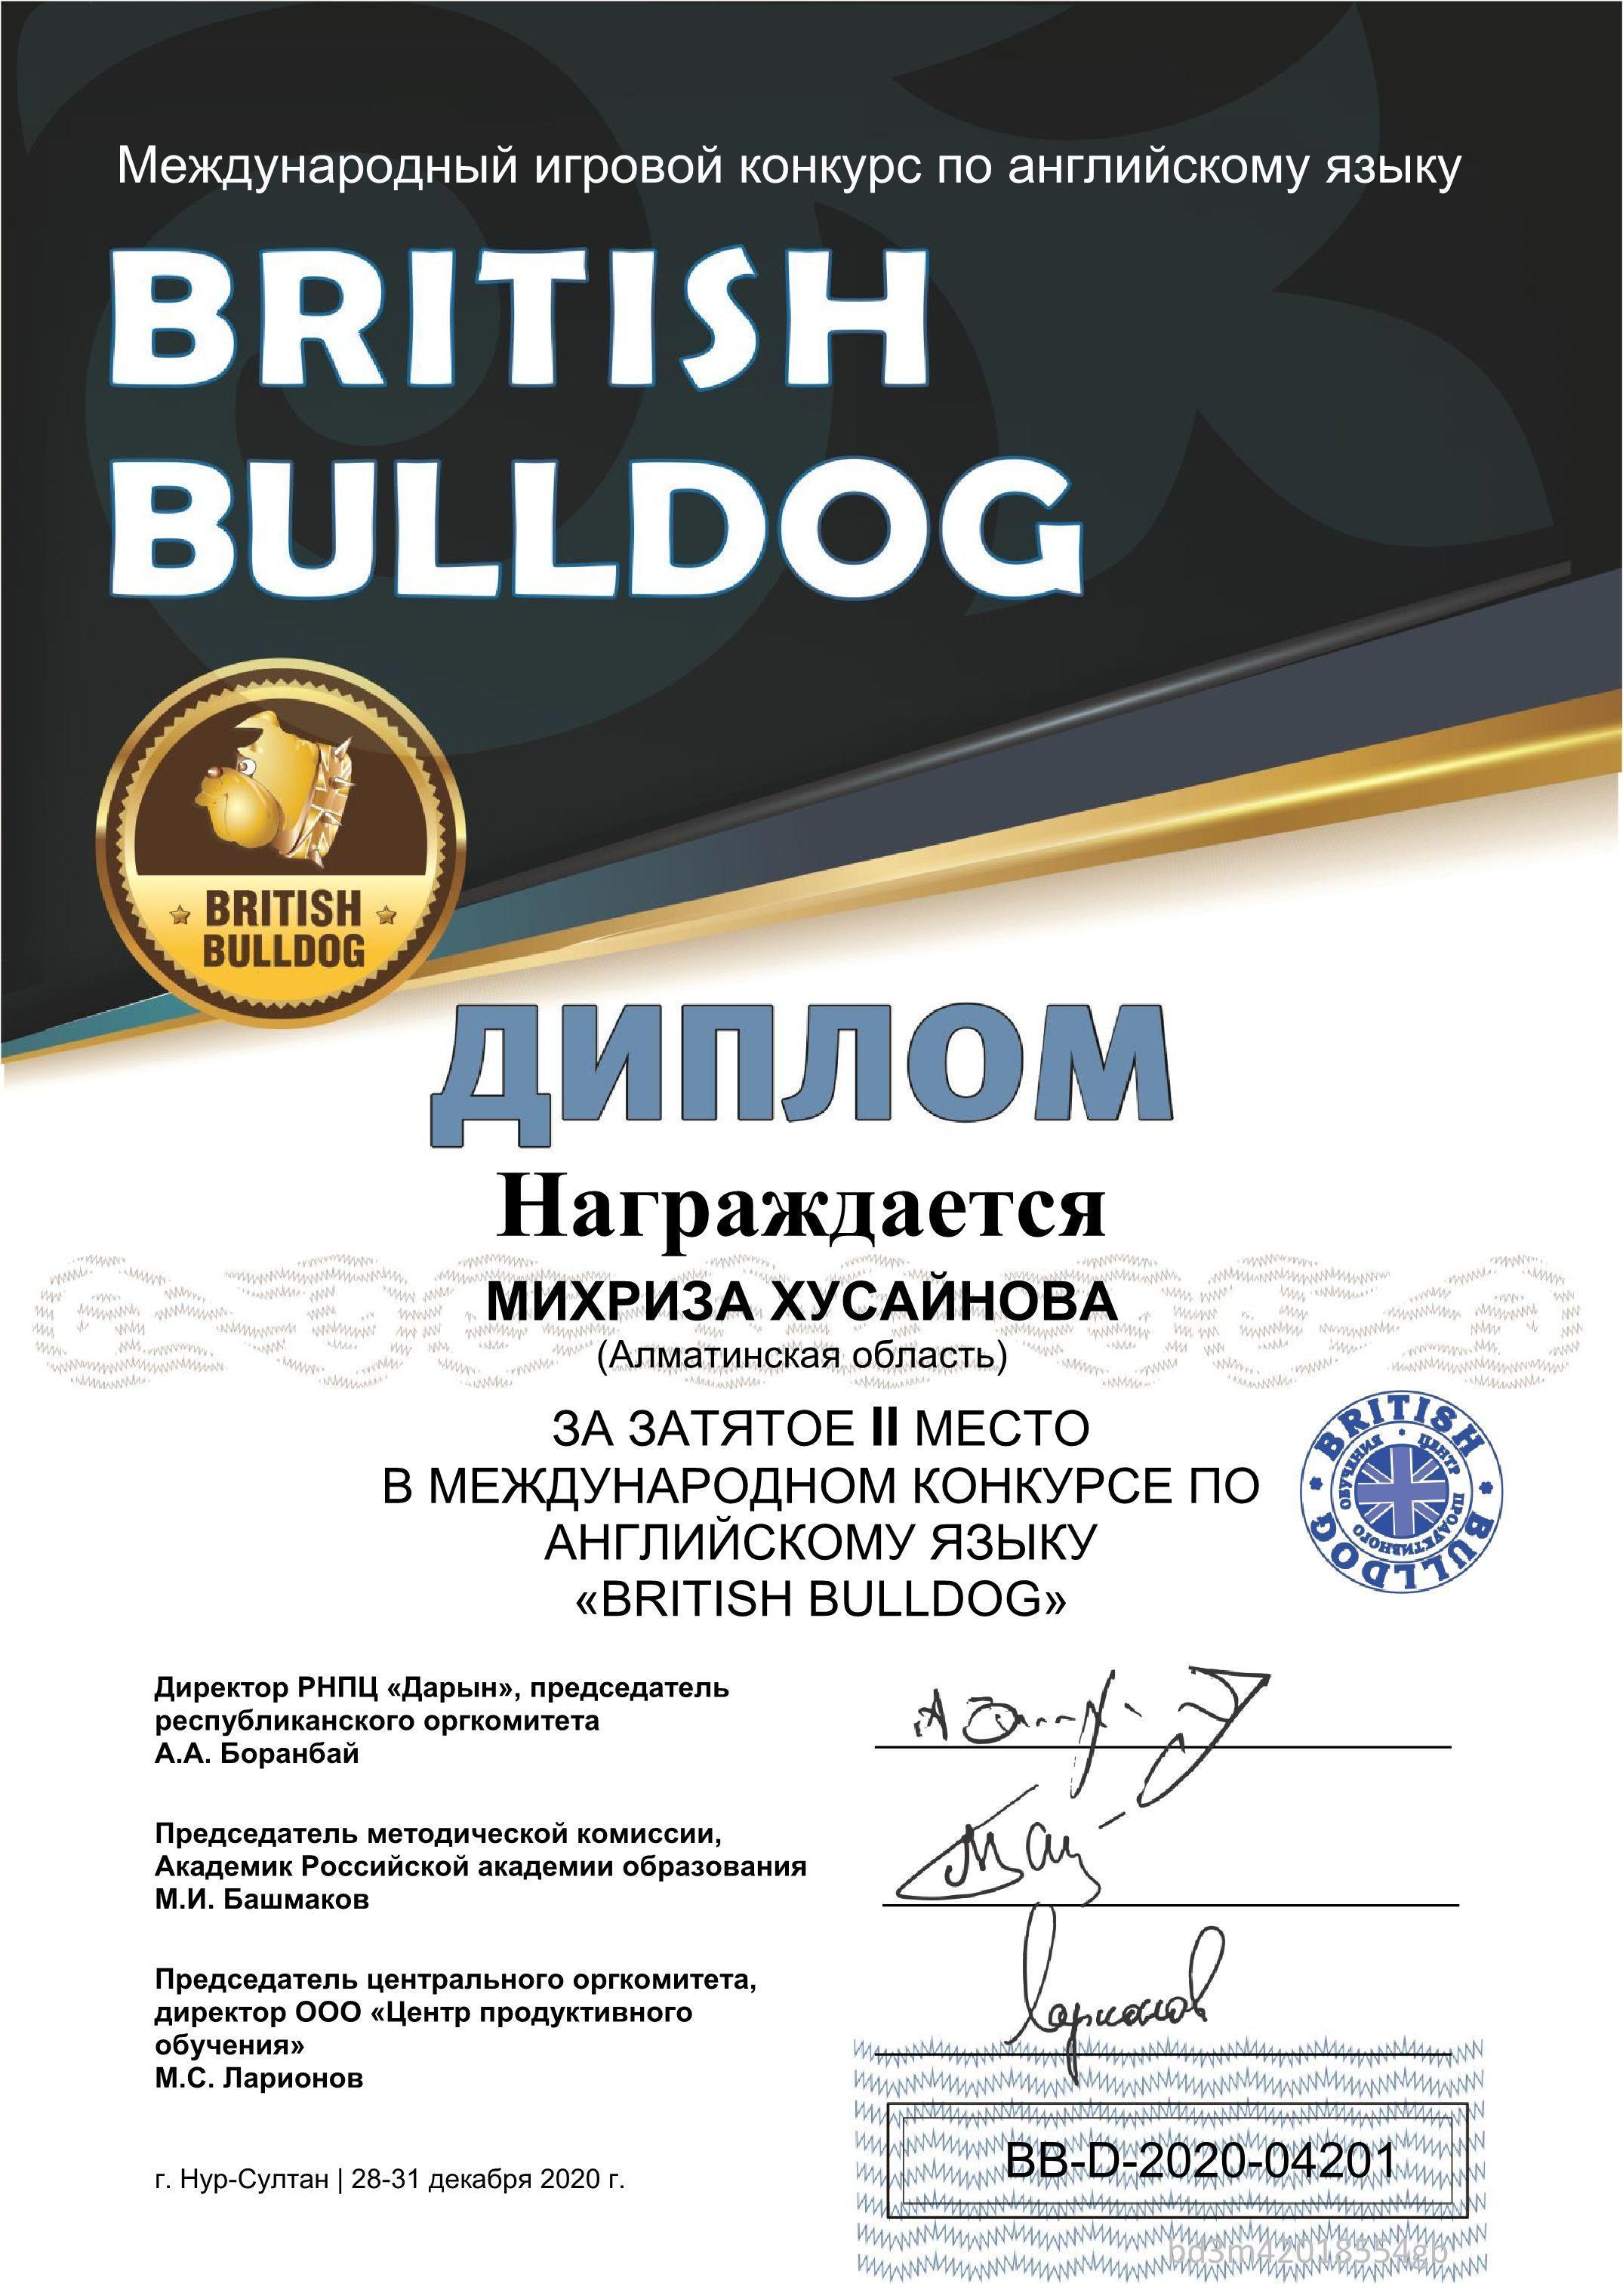 Международный игровой конкурс по английскому языку "British Bulldog"